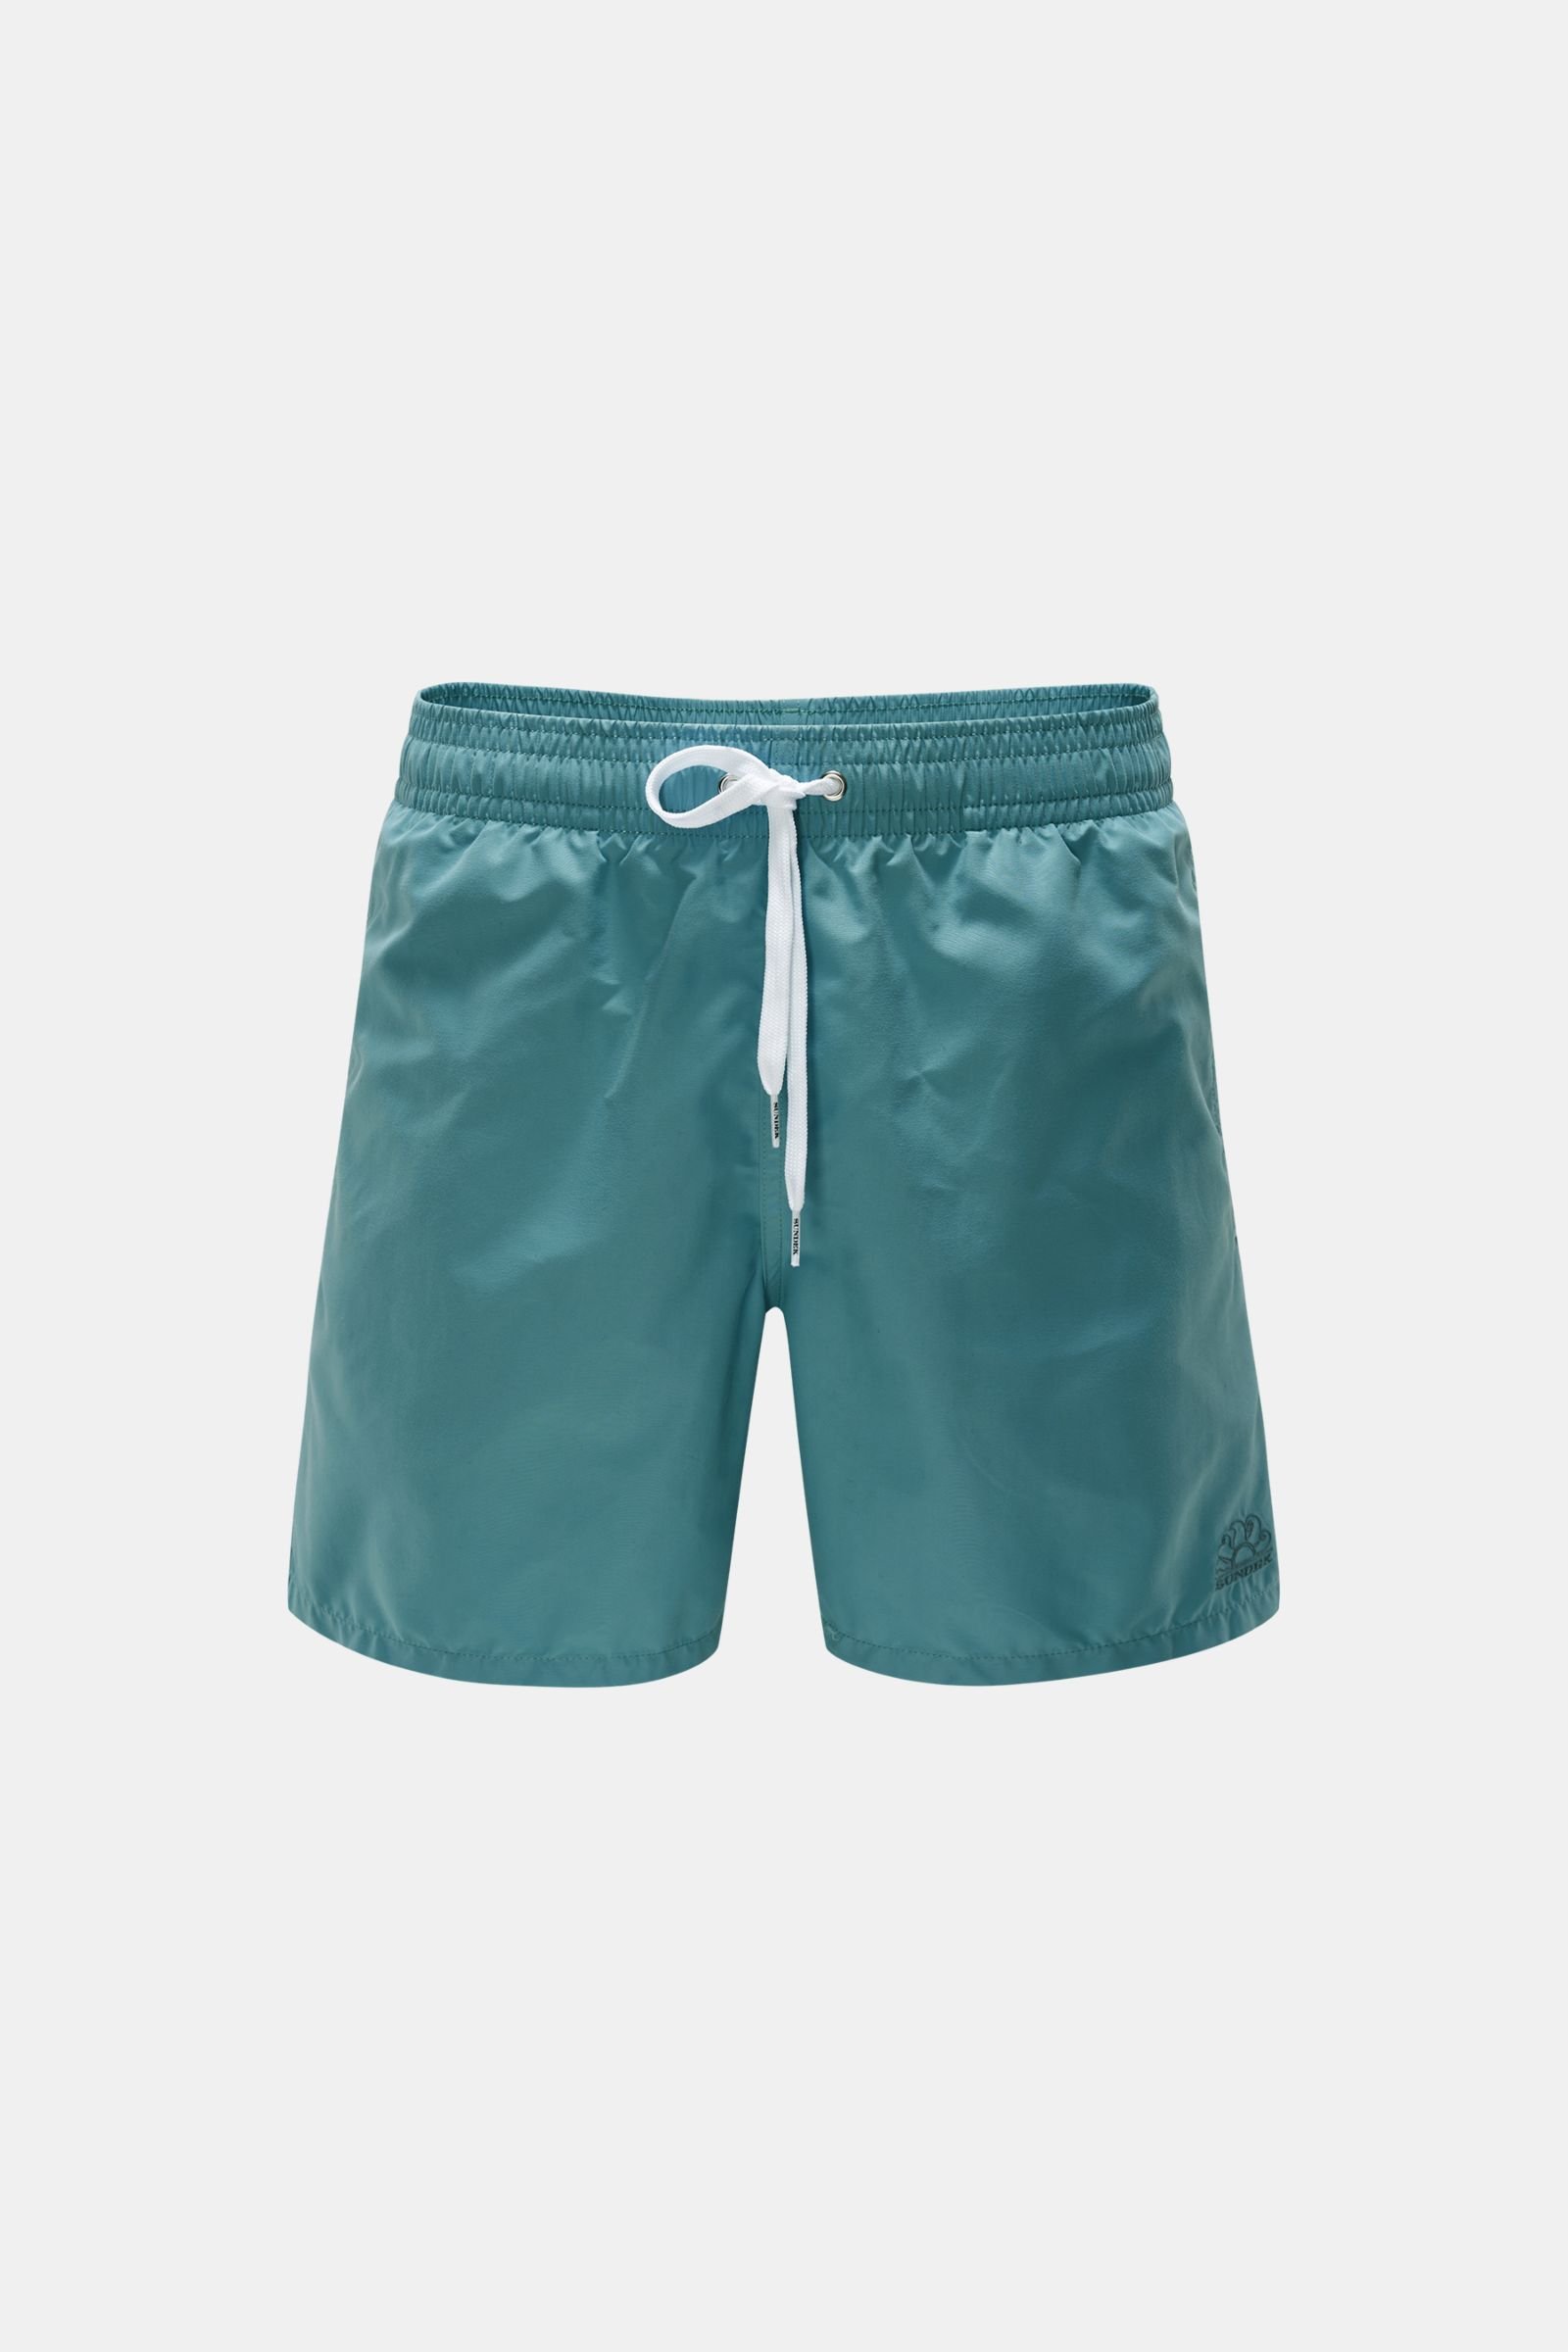 Swim shorts turquoise